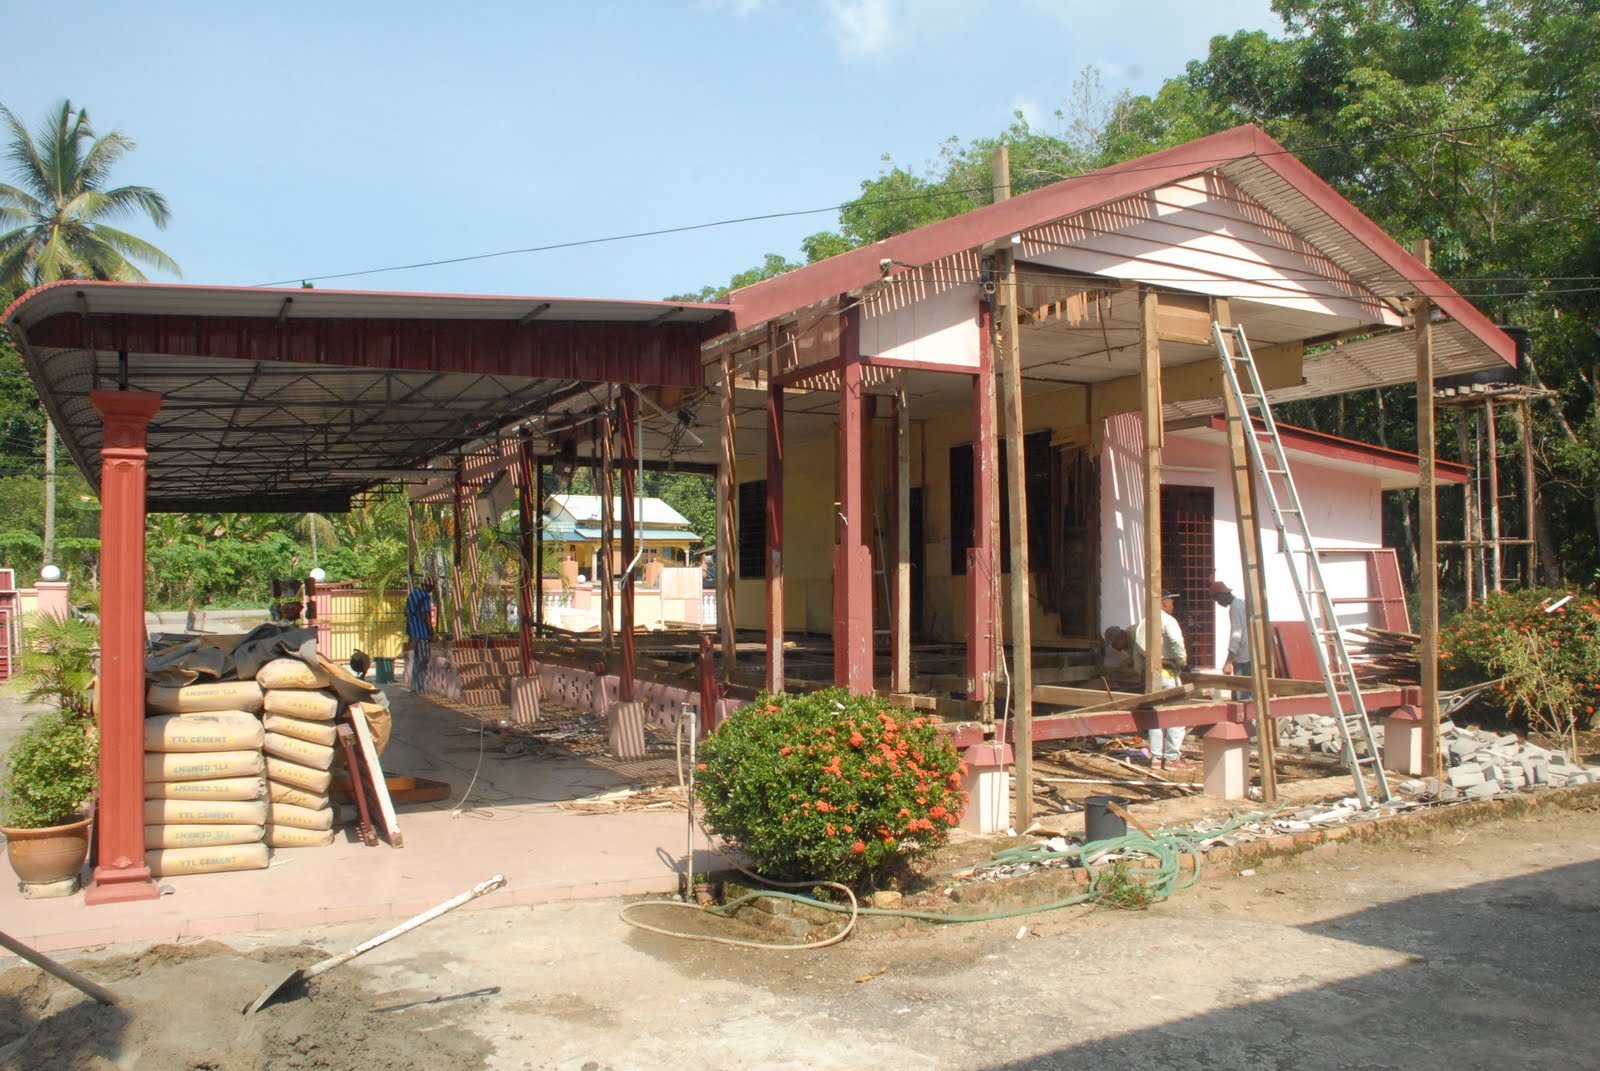 Ceritera kampung terindah: Klinik Desa Jakar dalam kawasan 